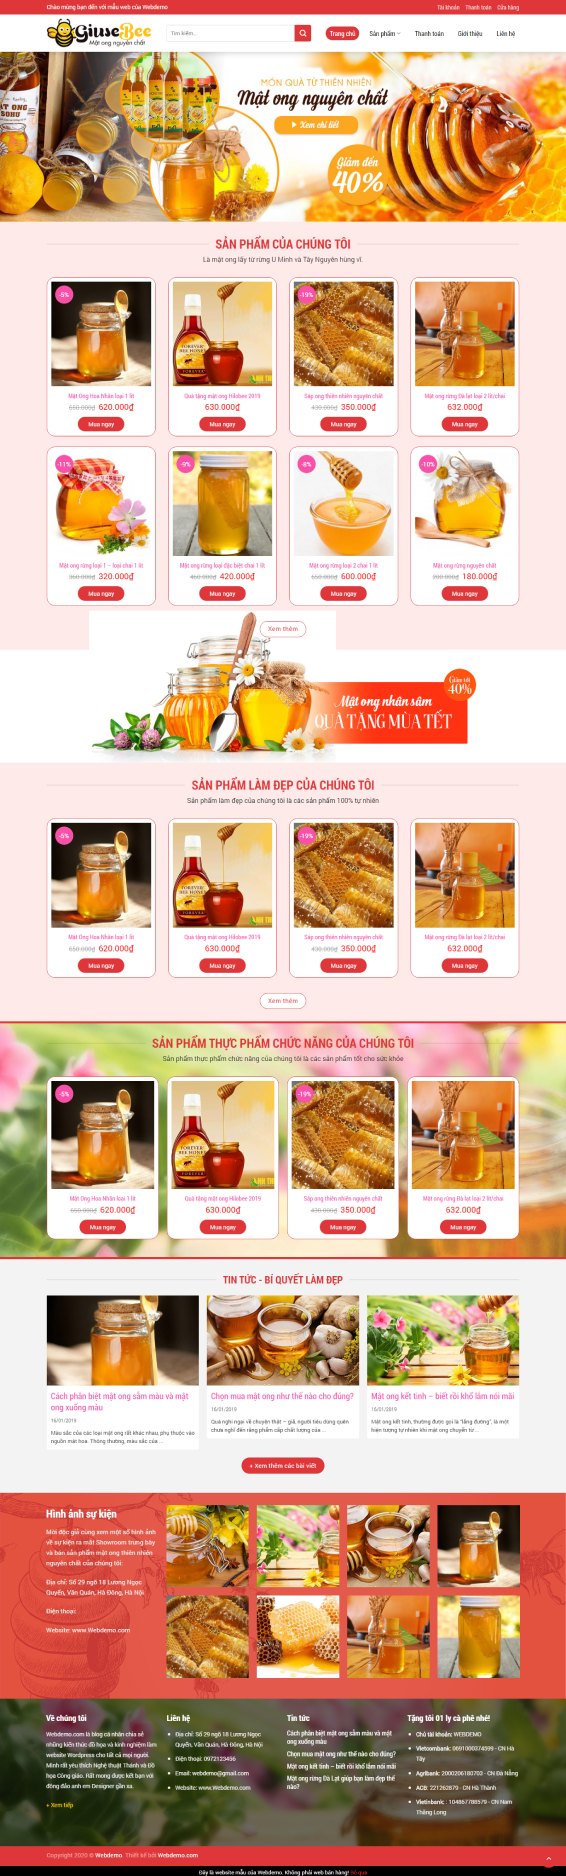 Thiết kế website shop mật ong nguyên chất 2